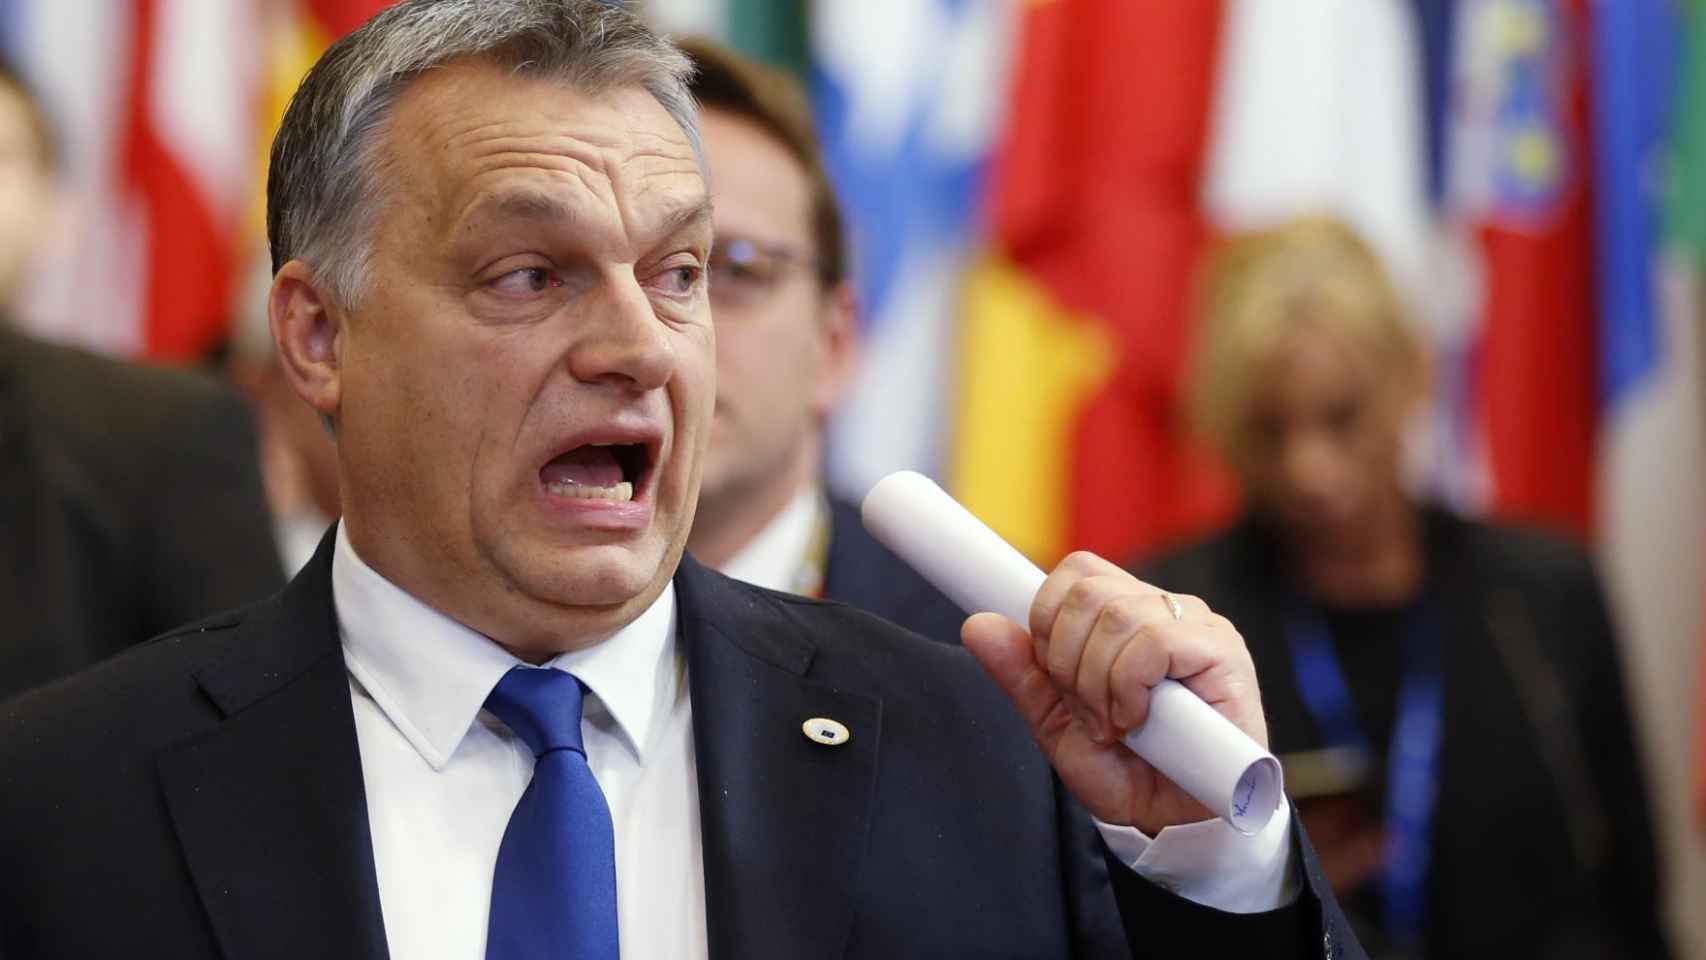 Viktor Orban durante su llegada a una cumbre de la UE, donde levanta ampollas.